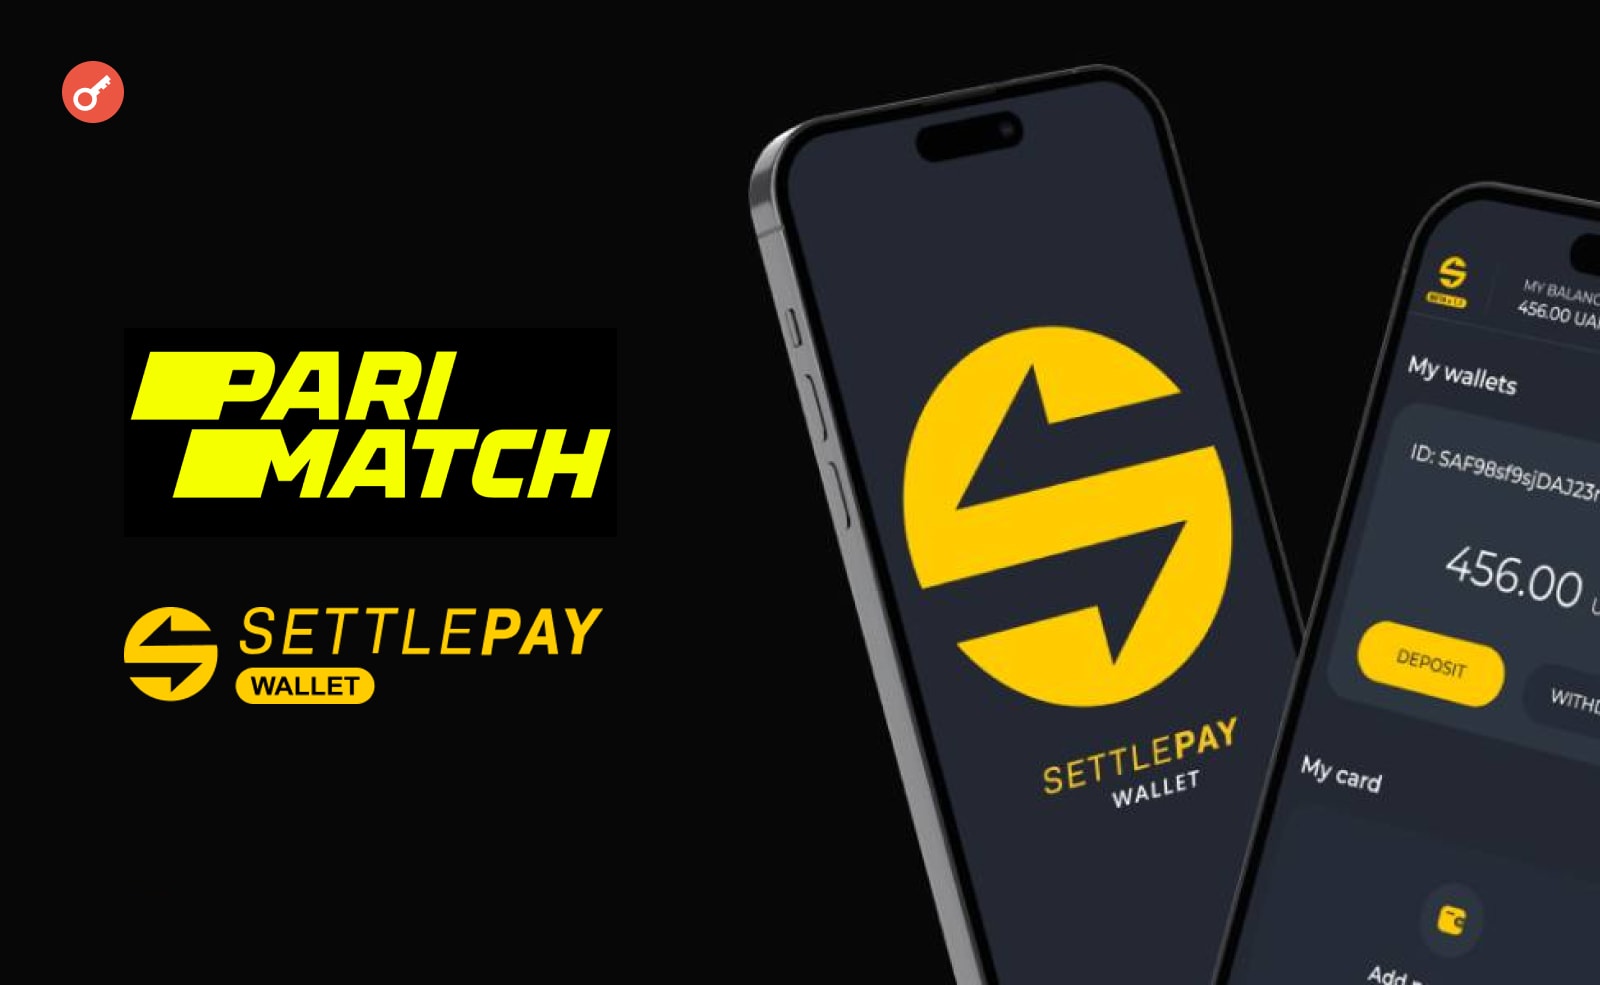 Parimatch добавил SettlePay Wallet в качестве платежного сервиса и запустил акцию. Заглавный коллаж новости.